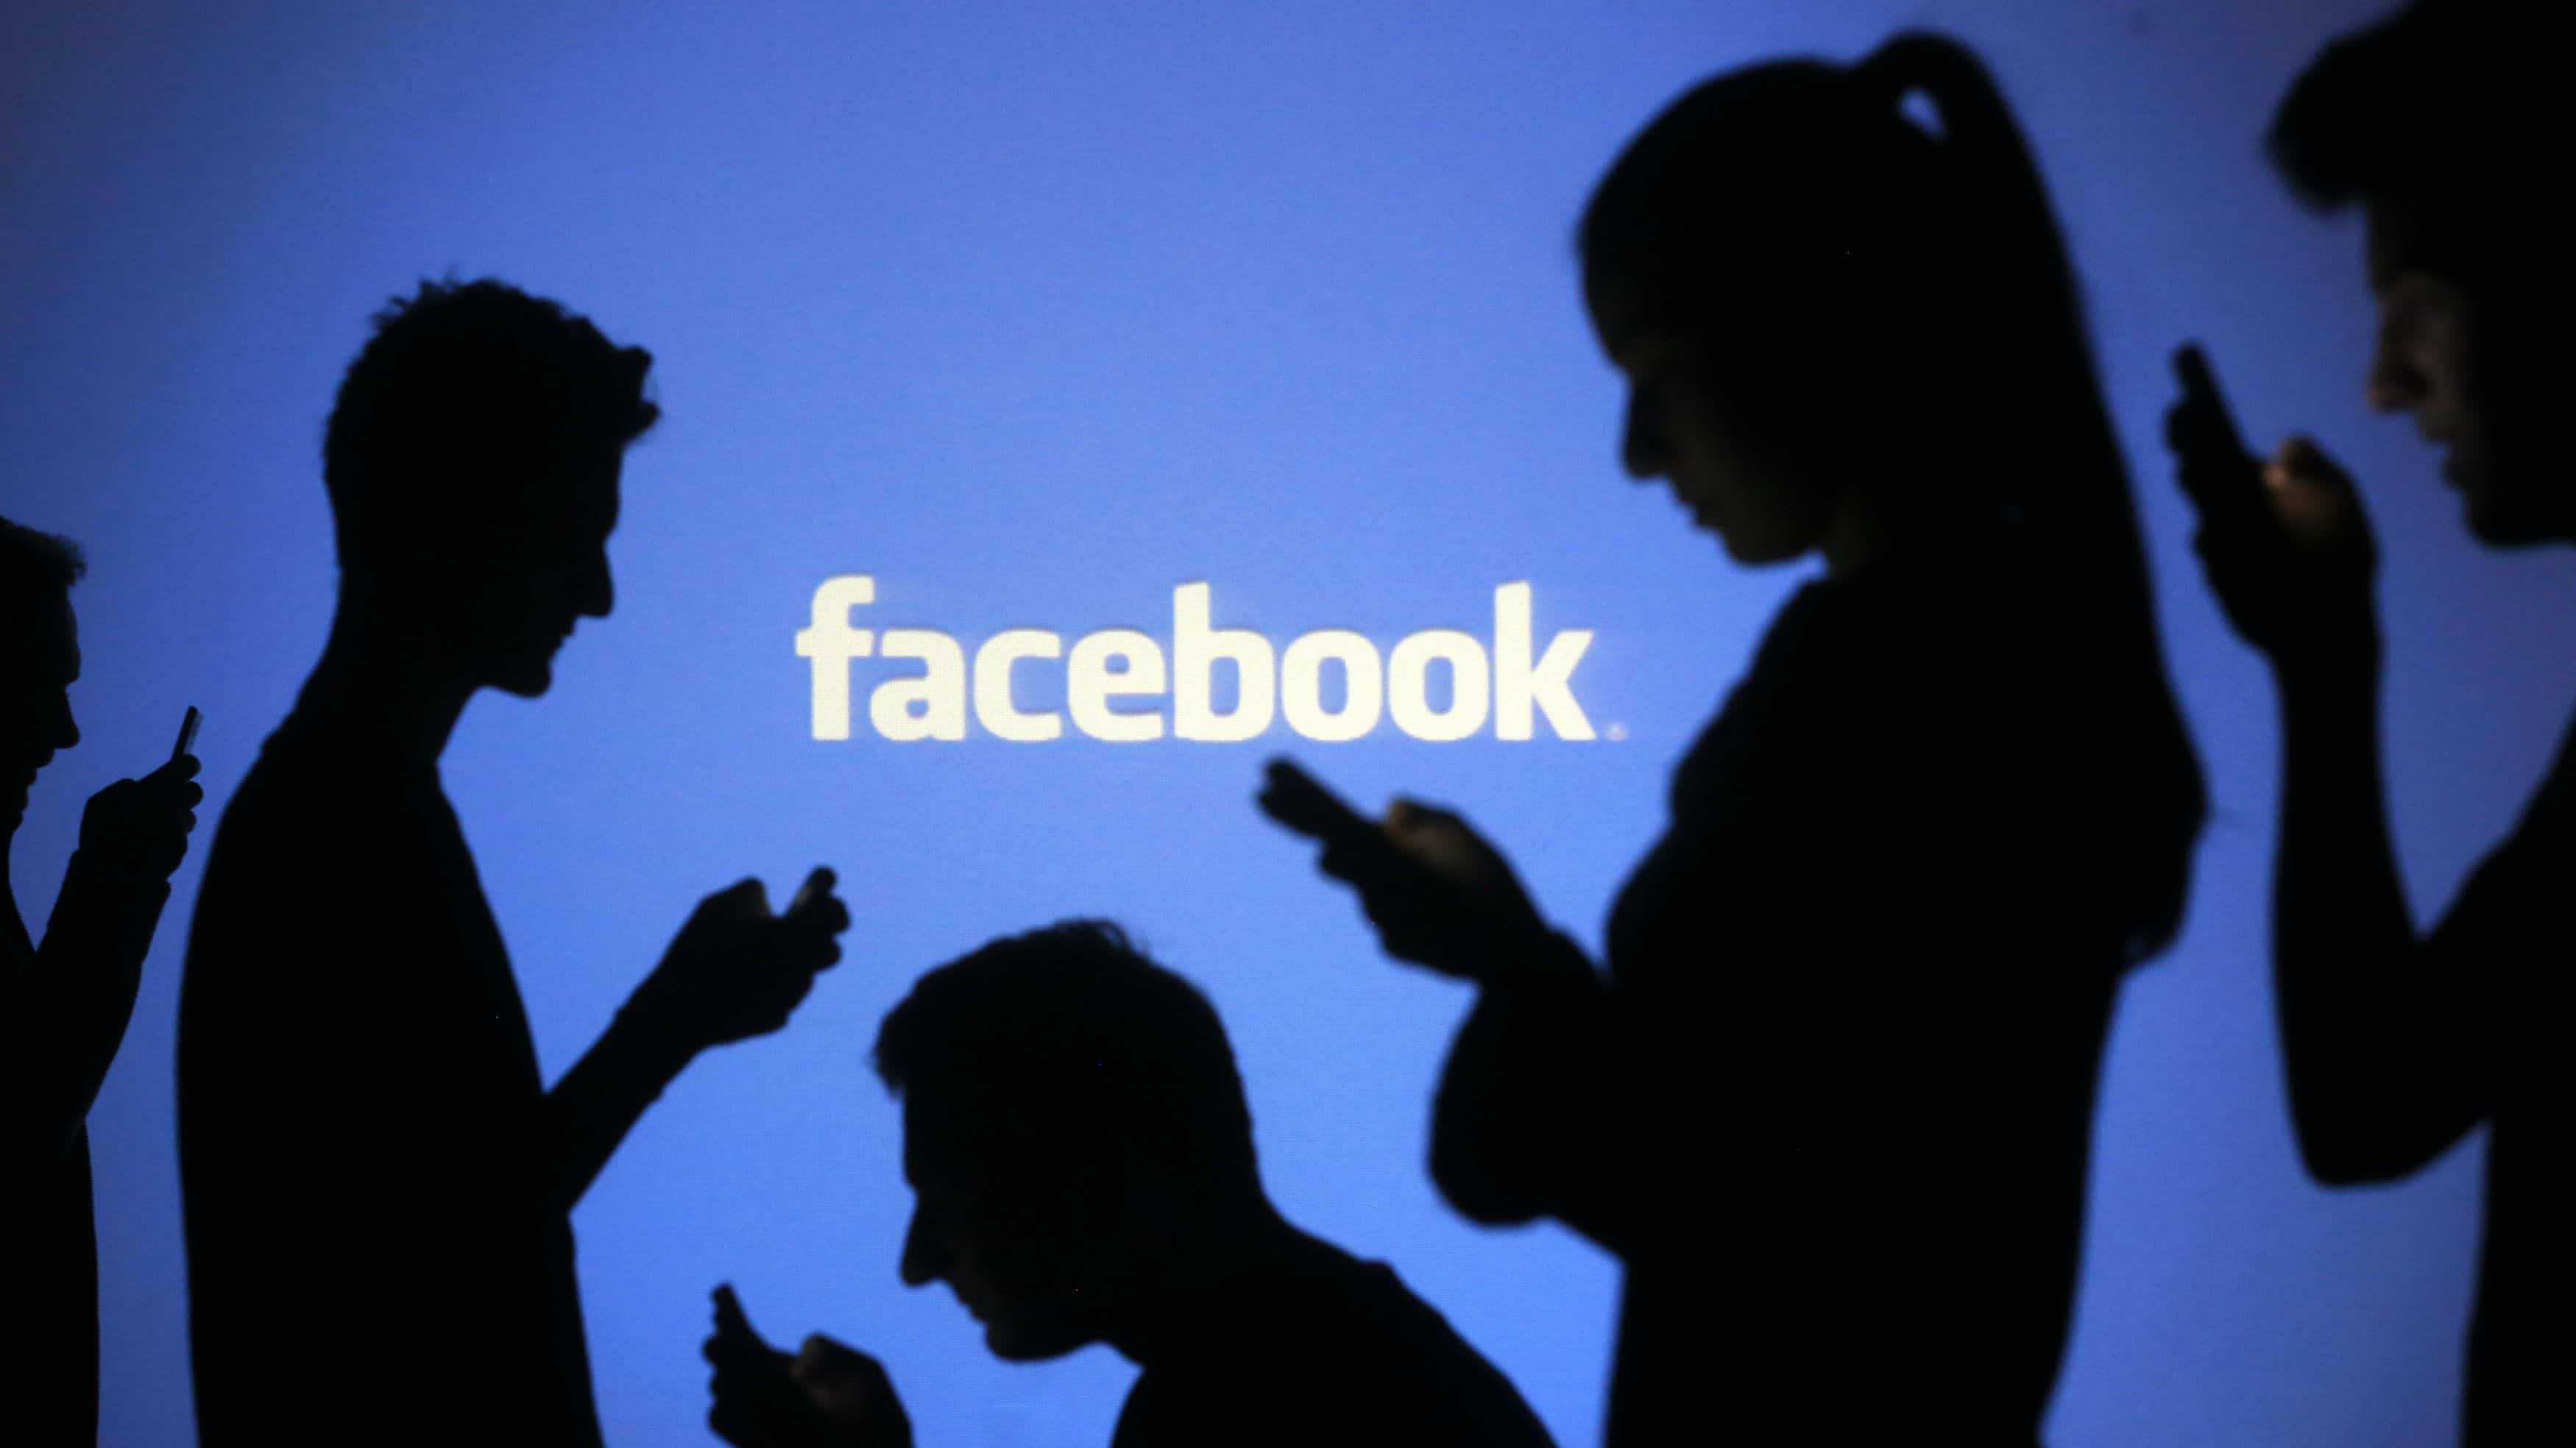 Facebook mais transparente nas eleições 2018